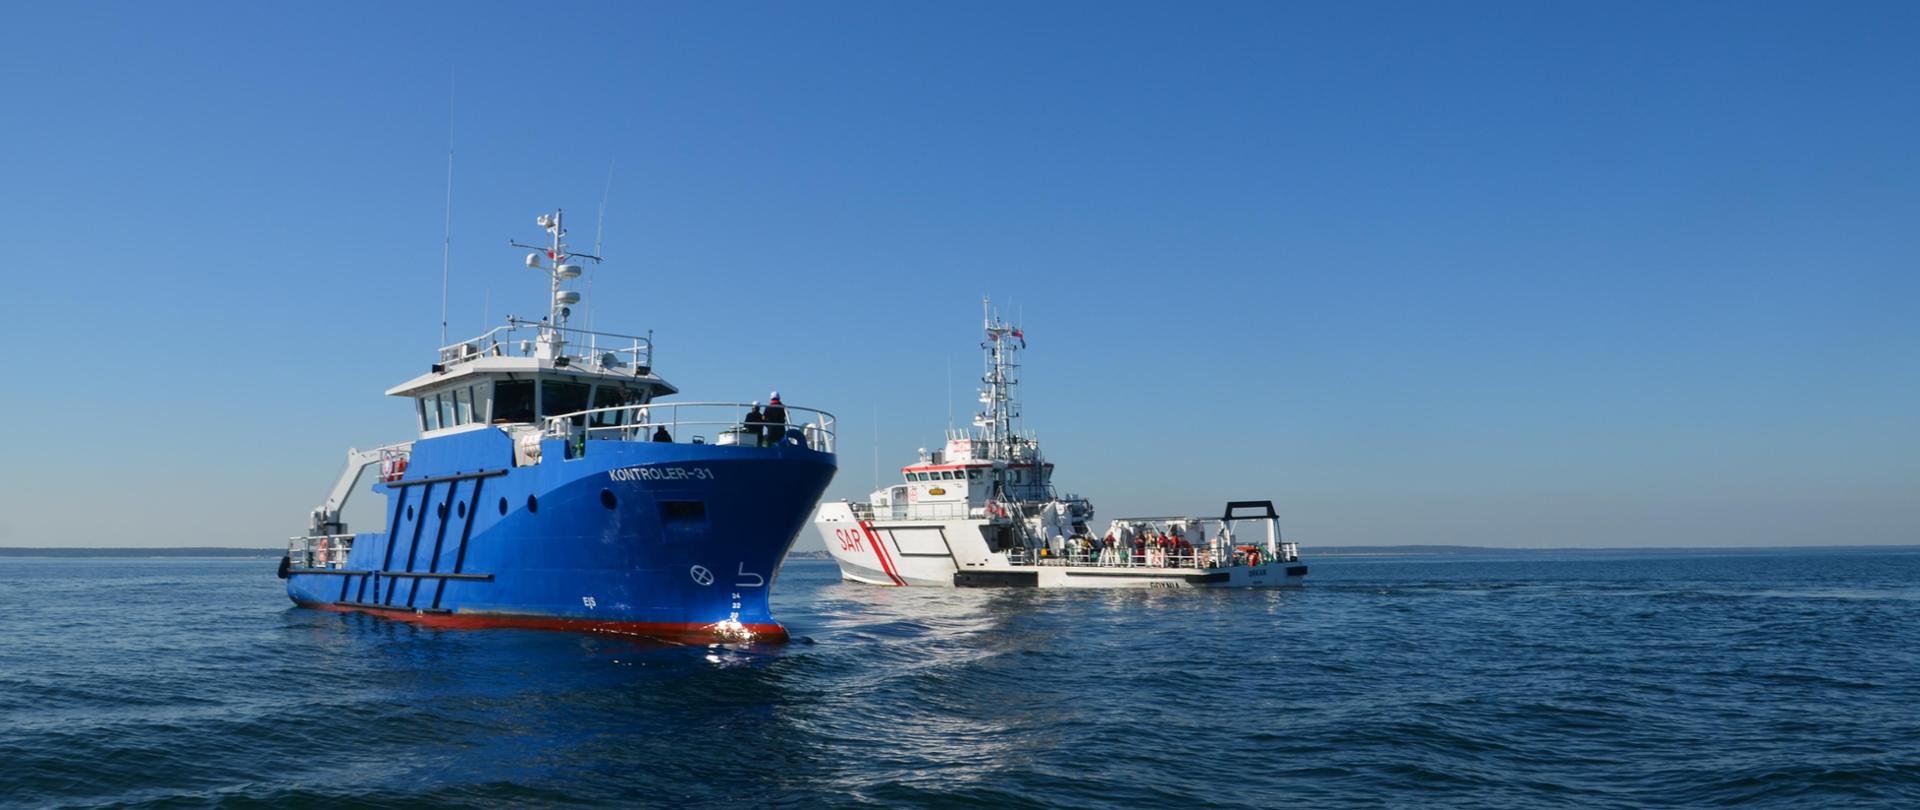 niebieski statek inspekcyjny mijający biały statek na spokojnym i błękitnym morzu